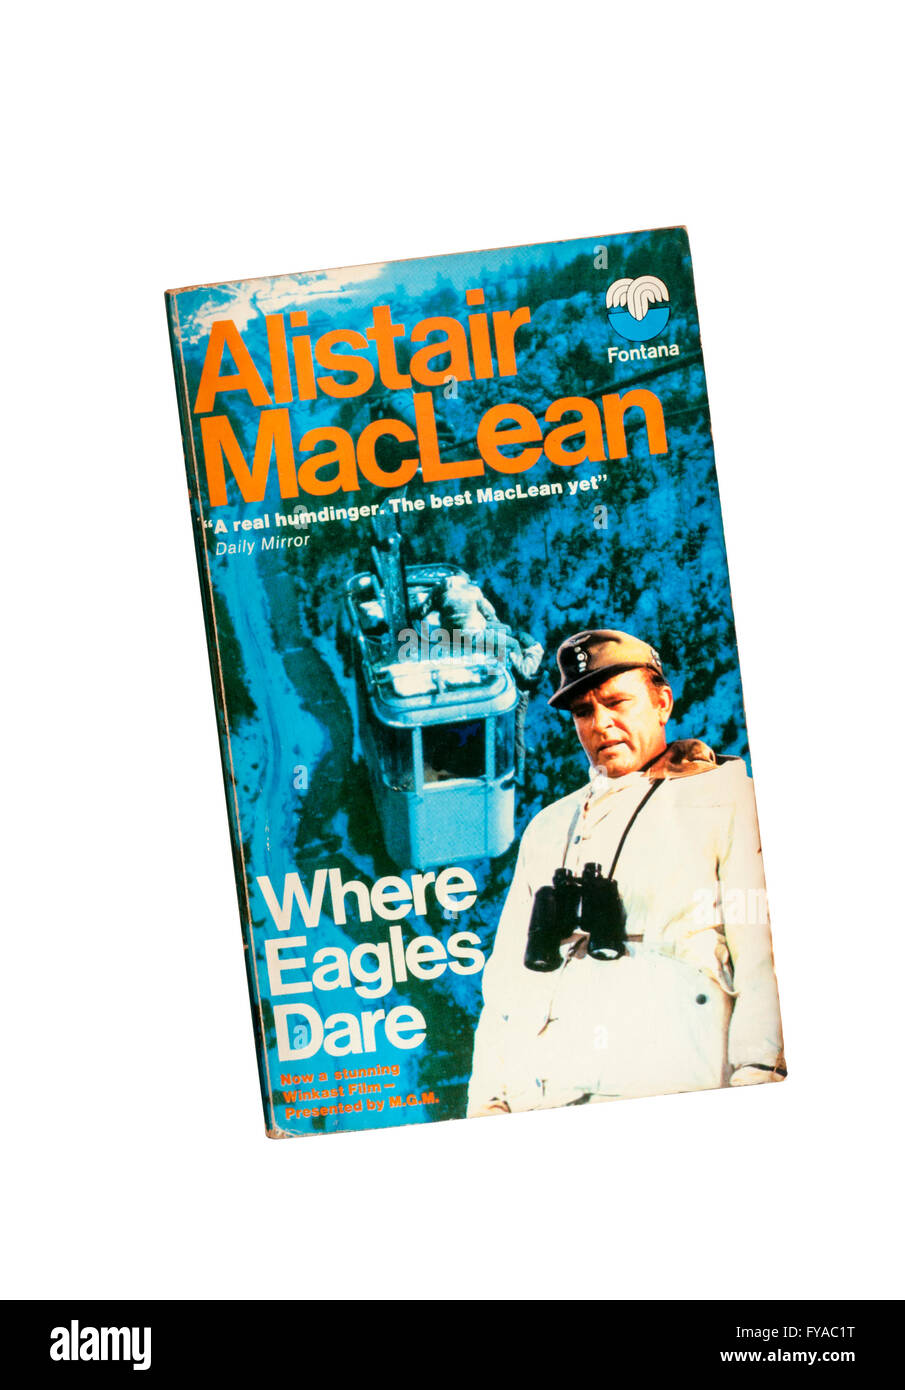 Kopie der Where Eagles Dare. Geschrieben von Alistair MacLean im Jahr 1968, zur gleichen Zeit wie das Drehbuch für den Film mit dem gleichen Namen Stockfoto